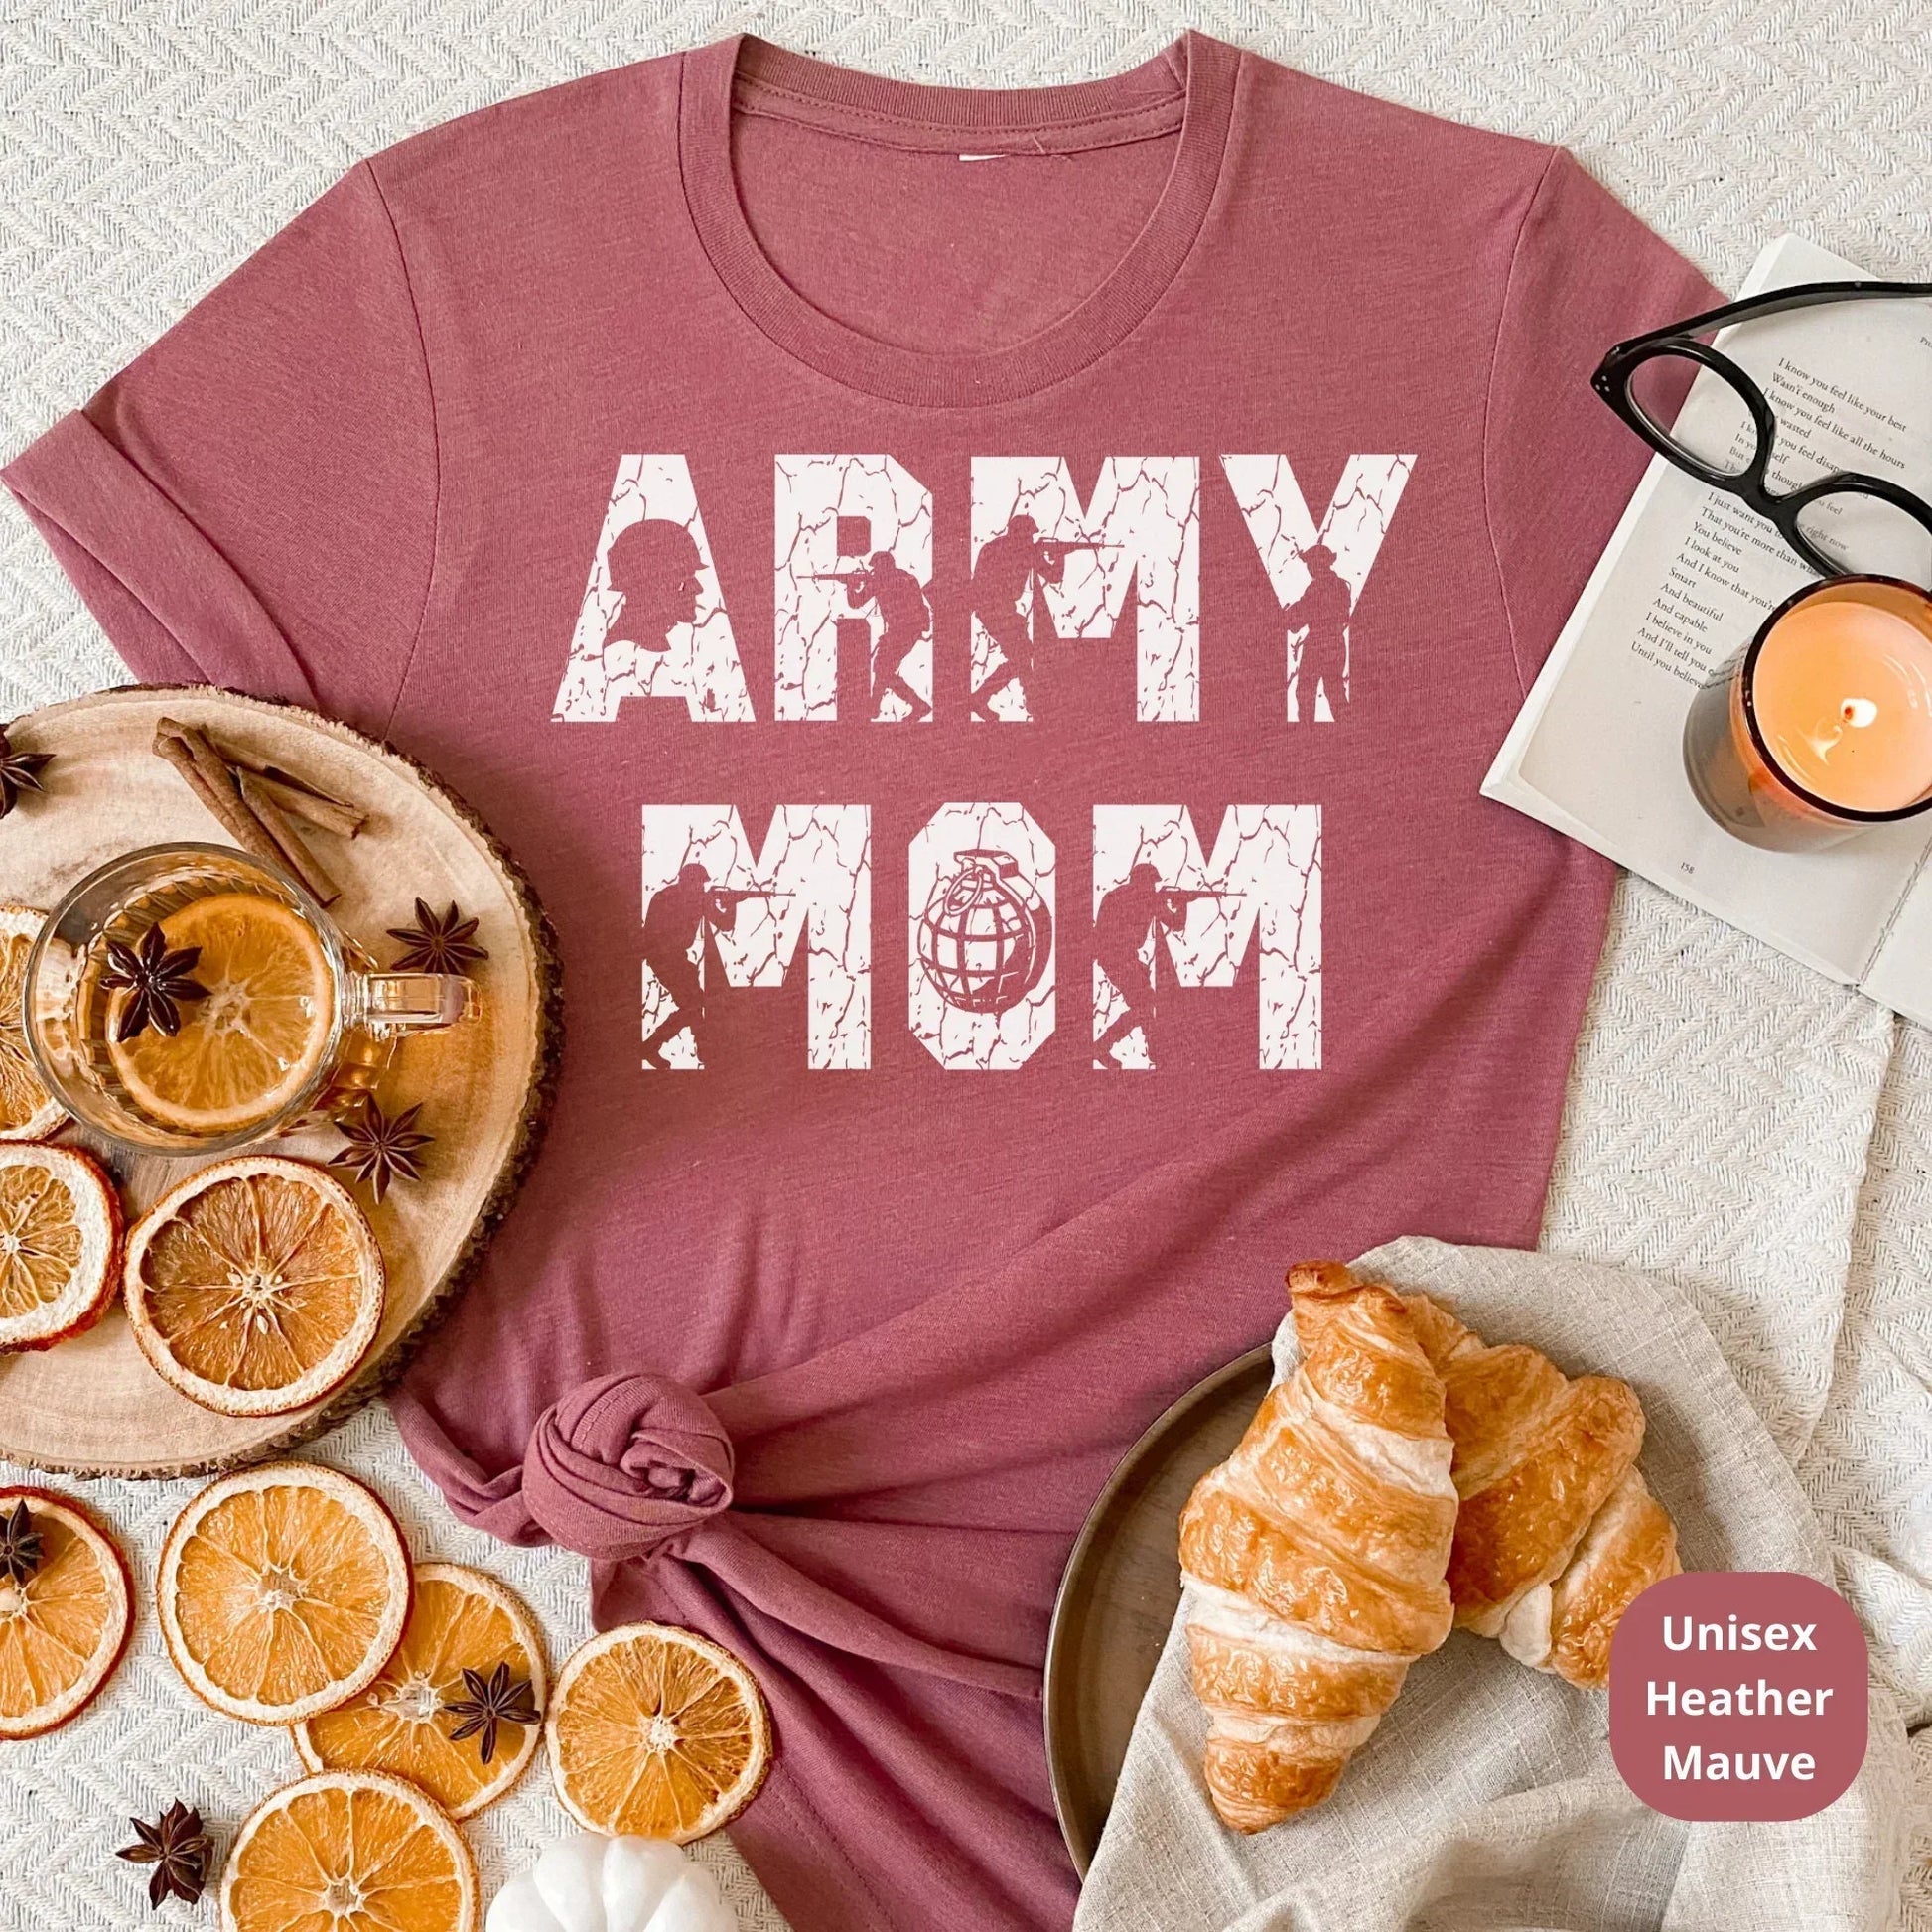 Army Mom Shirt, Proud Army Mom Shirt, Army Mom Gifts, Military Mom Shirt, Military Shirt for Women, Mothers Day Gift, Mom Birthday Gift